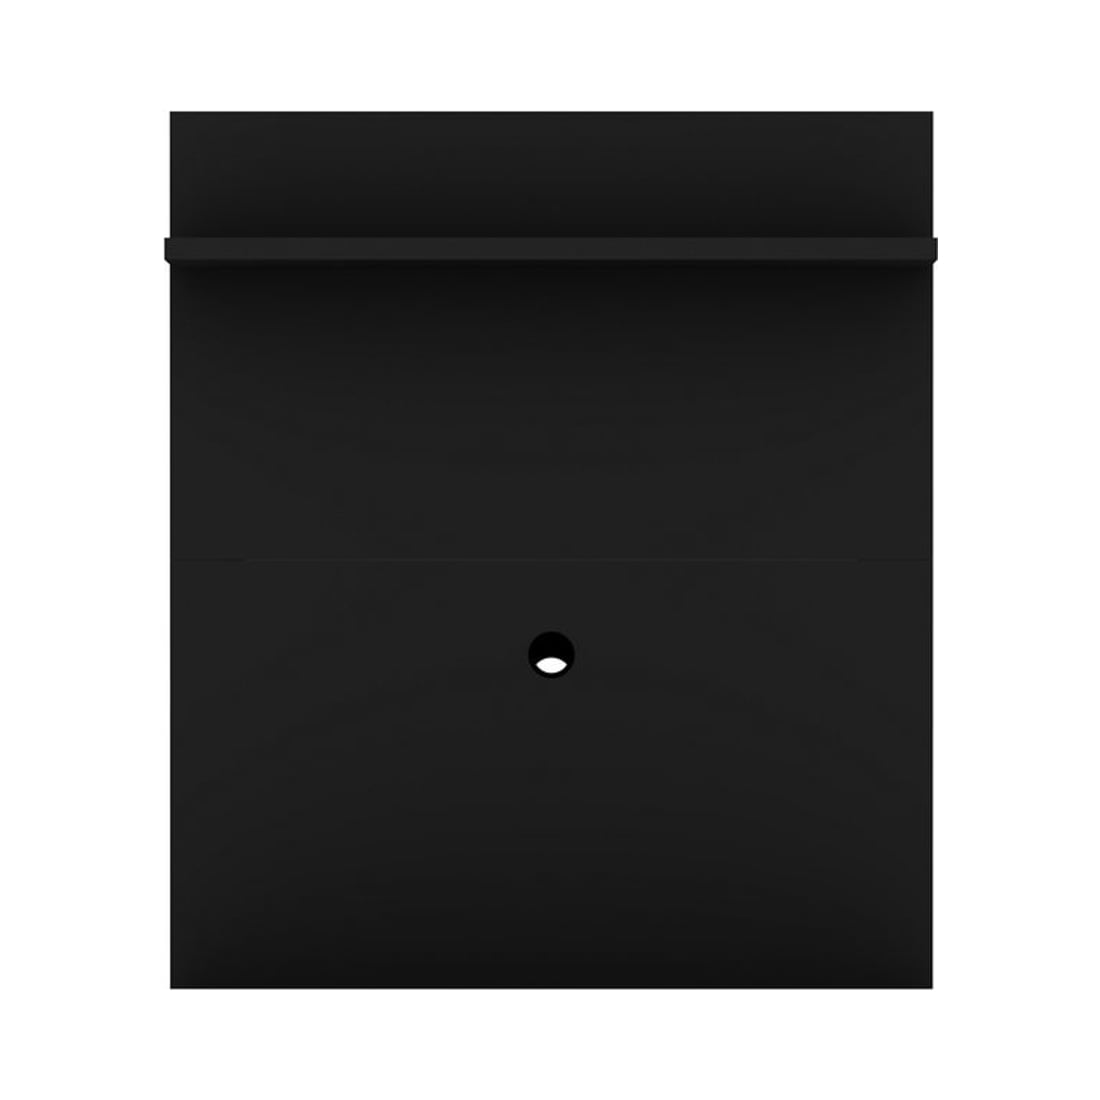 Tribeca 35.43” TV Panel in Black